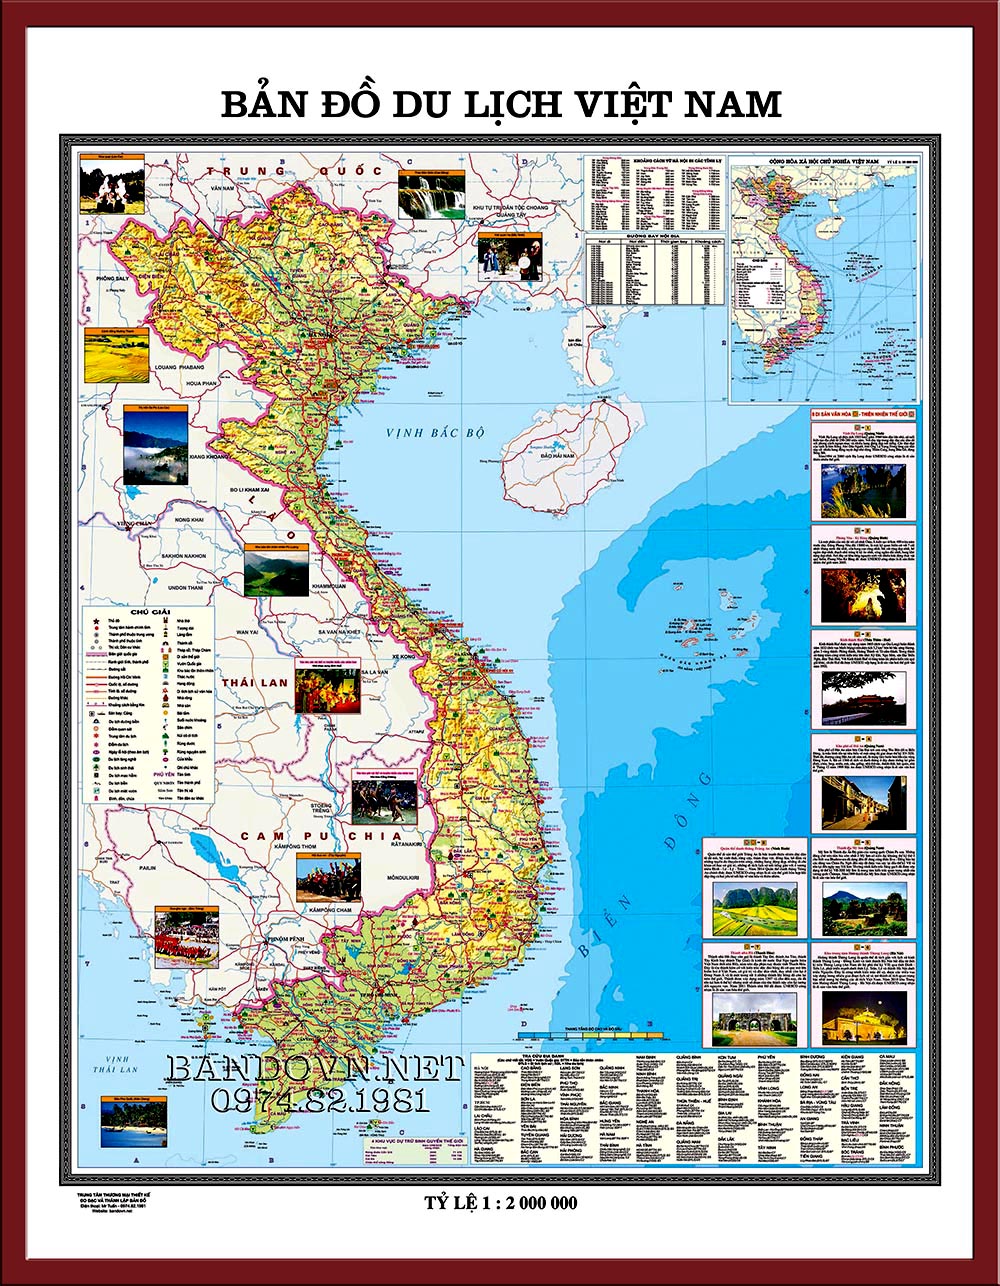 Với bản đồ du lịch Việt Nam chi tiết năm 2024, bạn sẽ dễ dàng lên kế hoạch cho chuyến đi của mình. Bản đồ cung cấp những thông tin cần thiết về địa điểm đến, văn hóa và ẩm thực của từng vùng miền để bạn có một trải nghiệm du lịch tuyệt vời nhất.